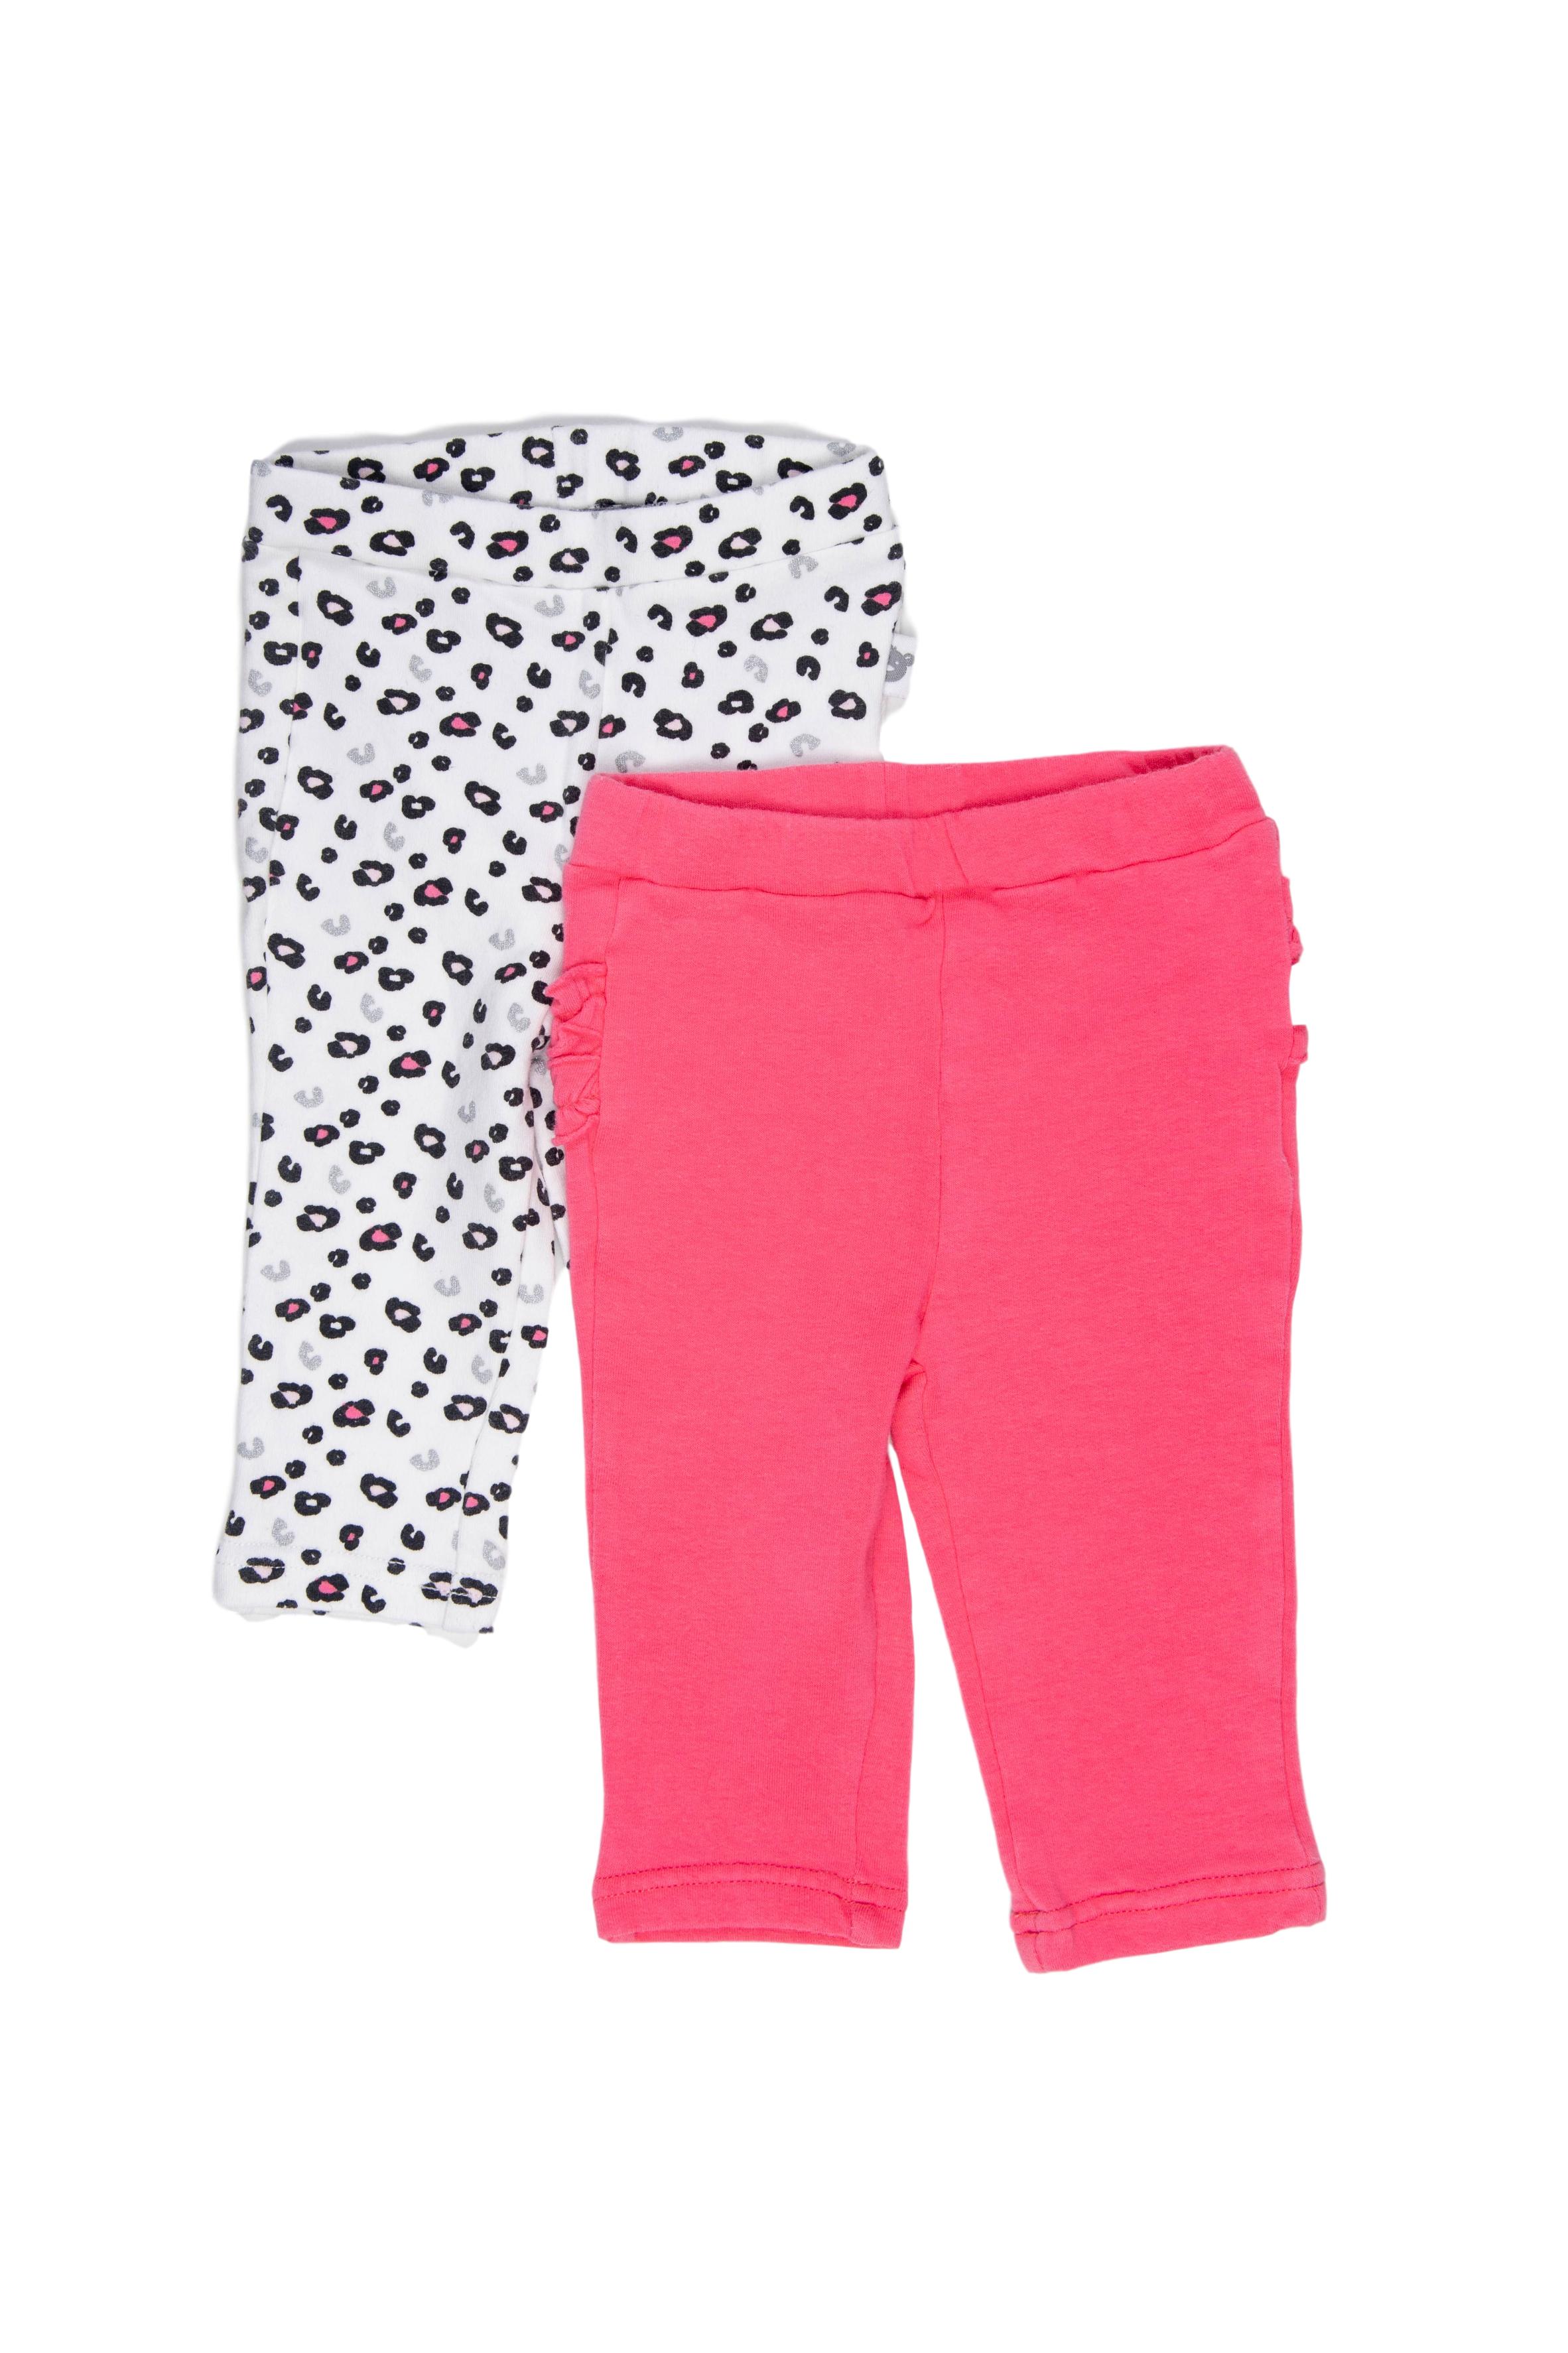 Set de 2 leggings, uno rosado fuerte con detalle en parte trasera, otro blanco con estampado animal printi. Ambos 95% algodón, 5% elastano - Harvest